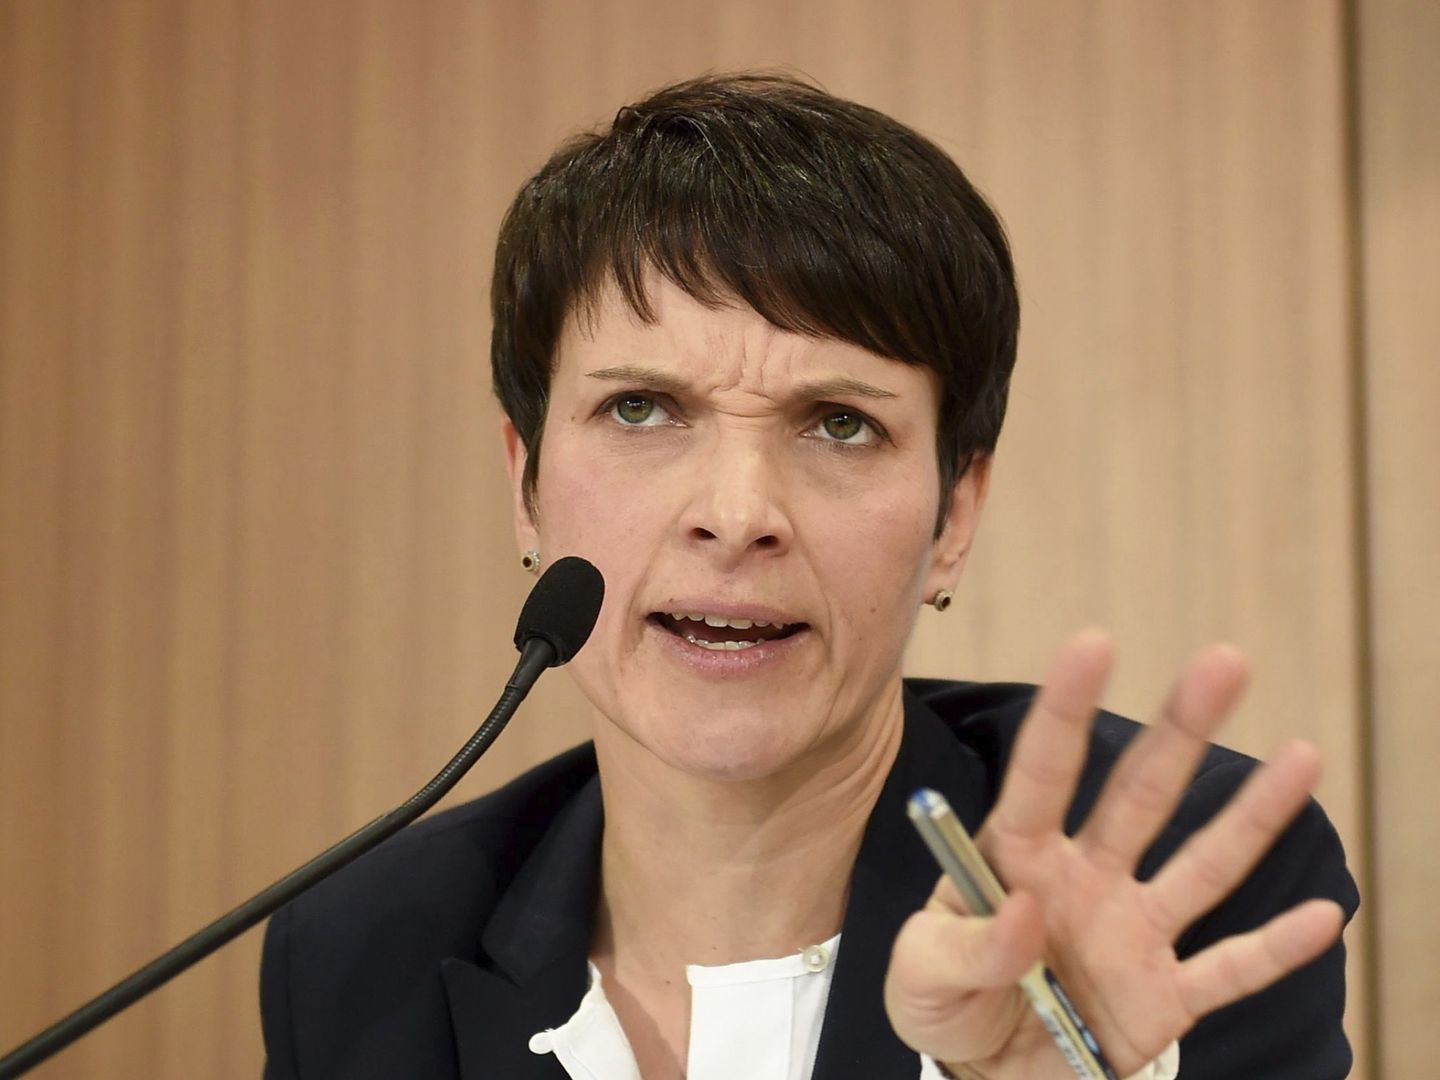 La líder de Alternativa para Alemania (AfD), Frauke Petry, durante una rueda de prensa en Berlín, el 5 de diciembre de 2016 (EFE)